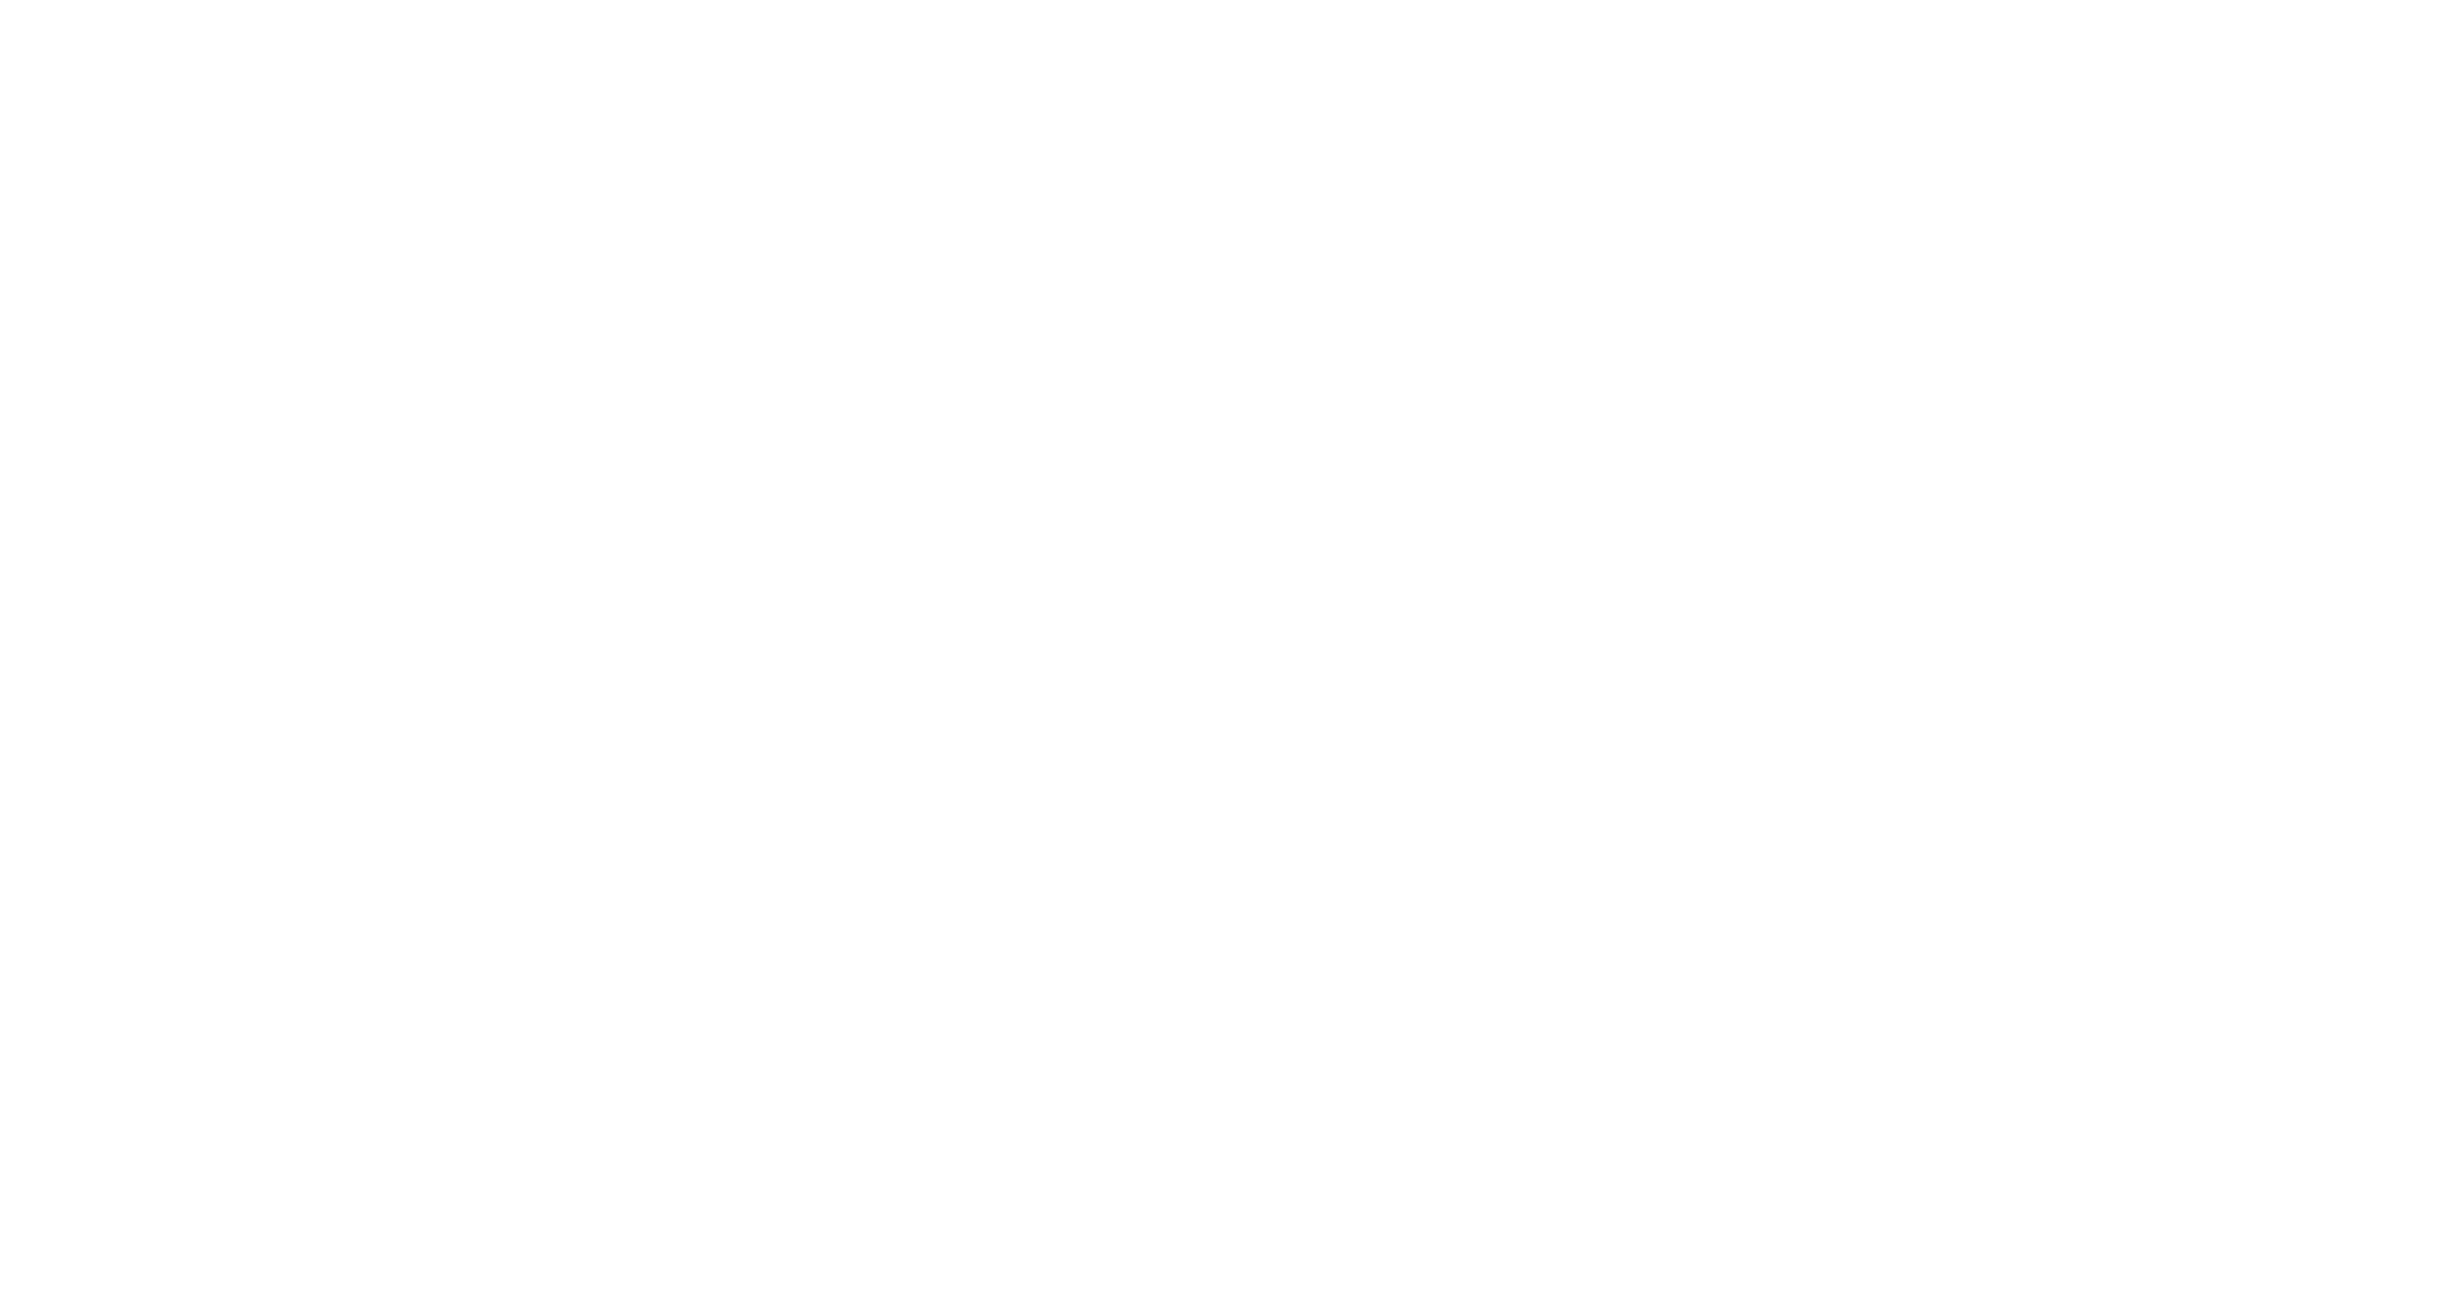 Public Enemies logo